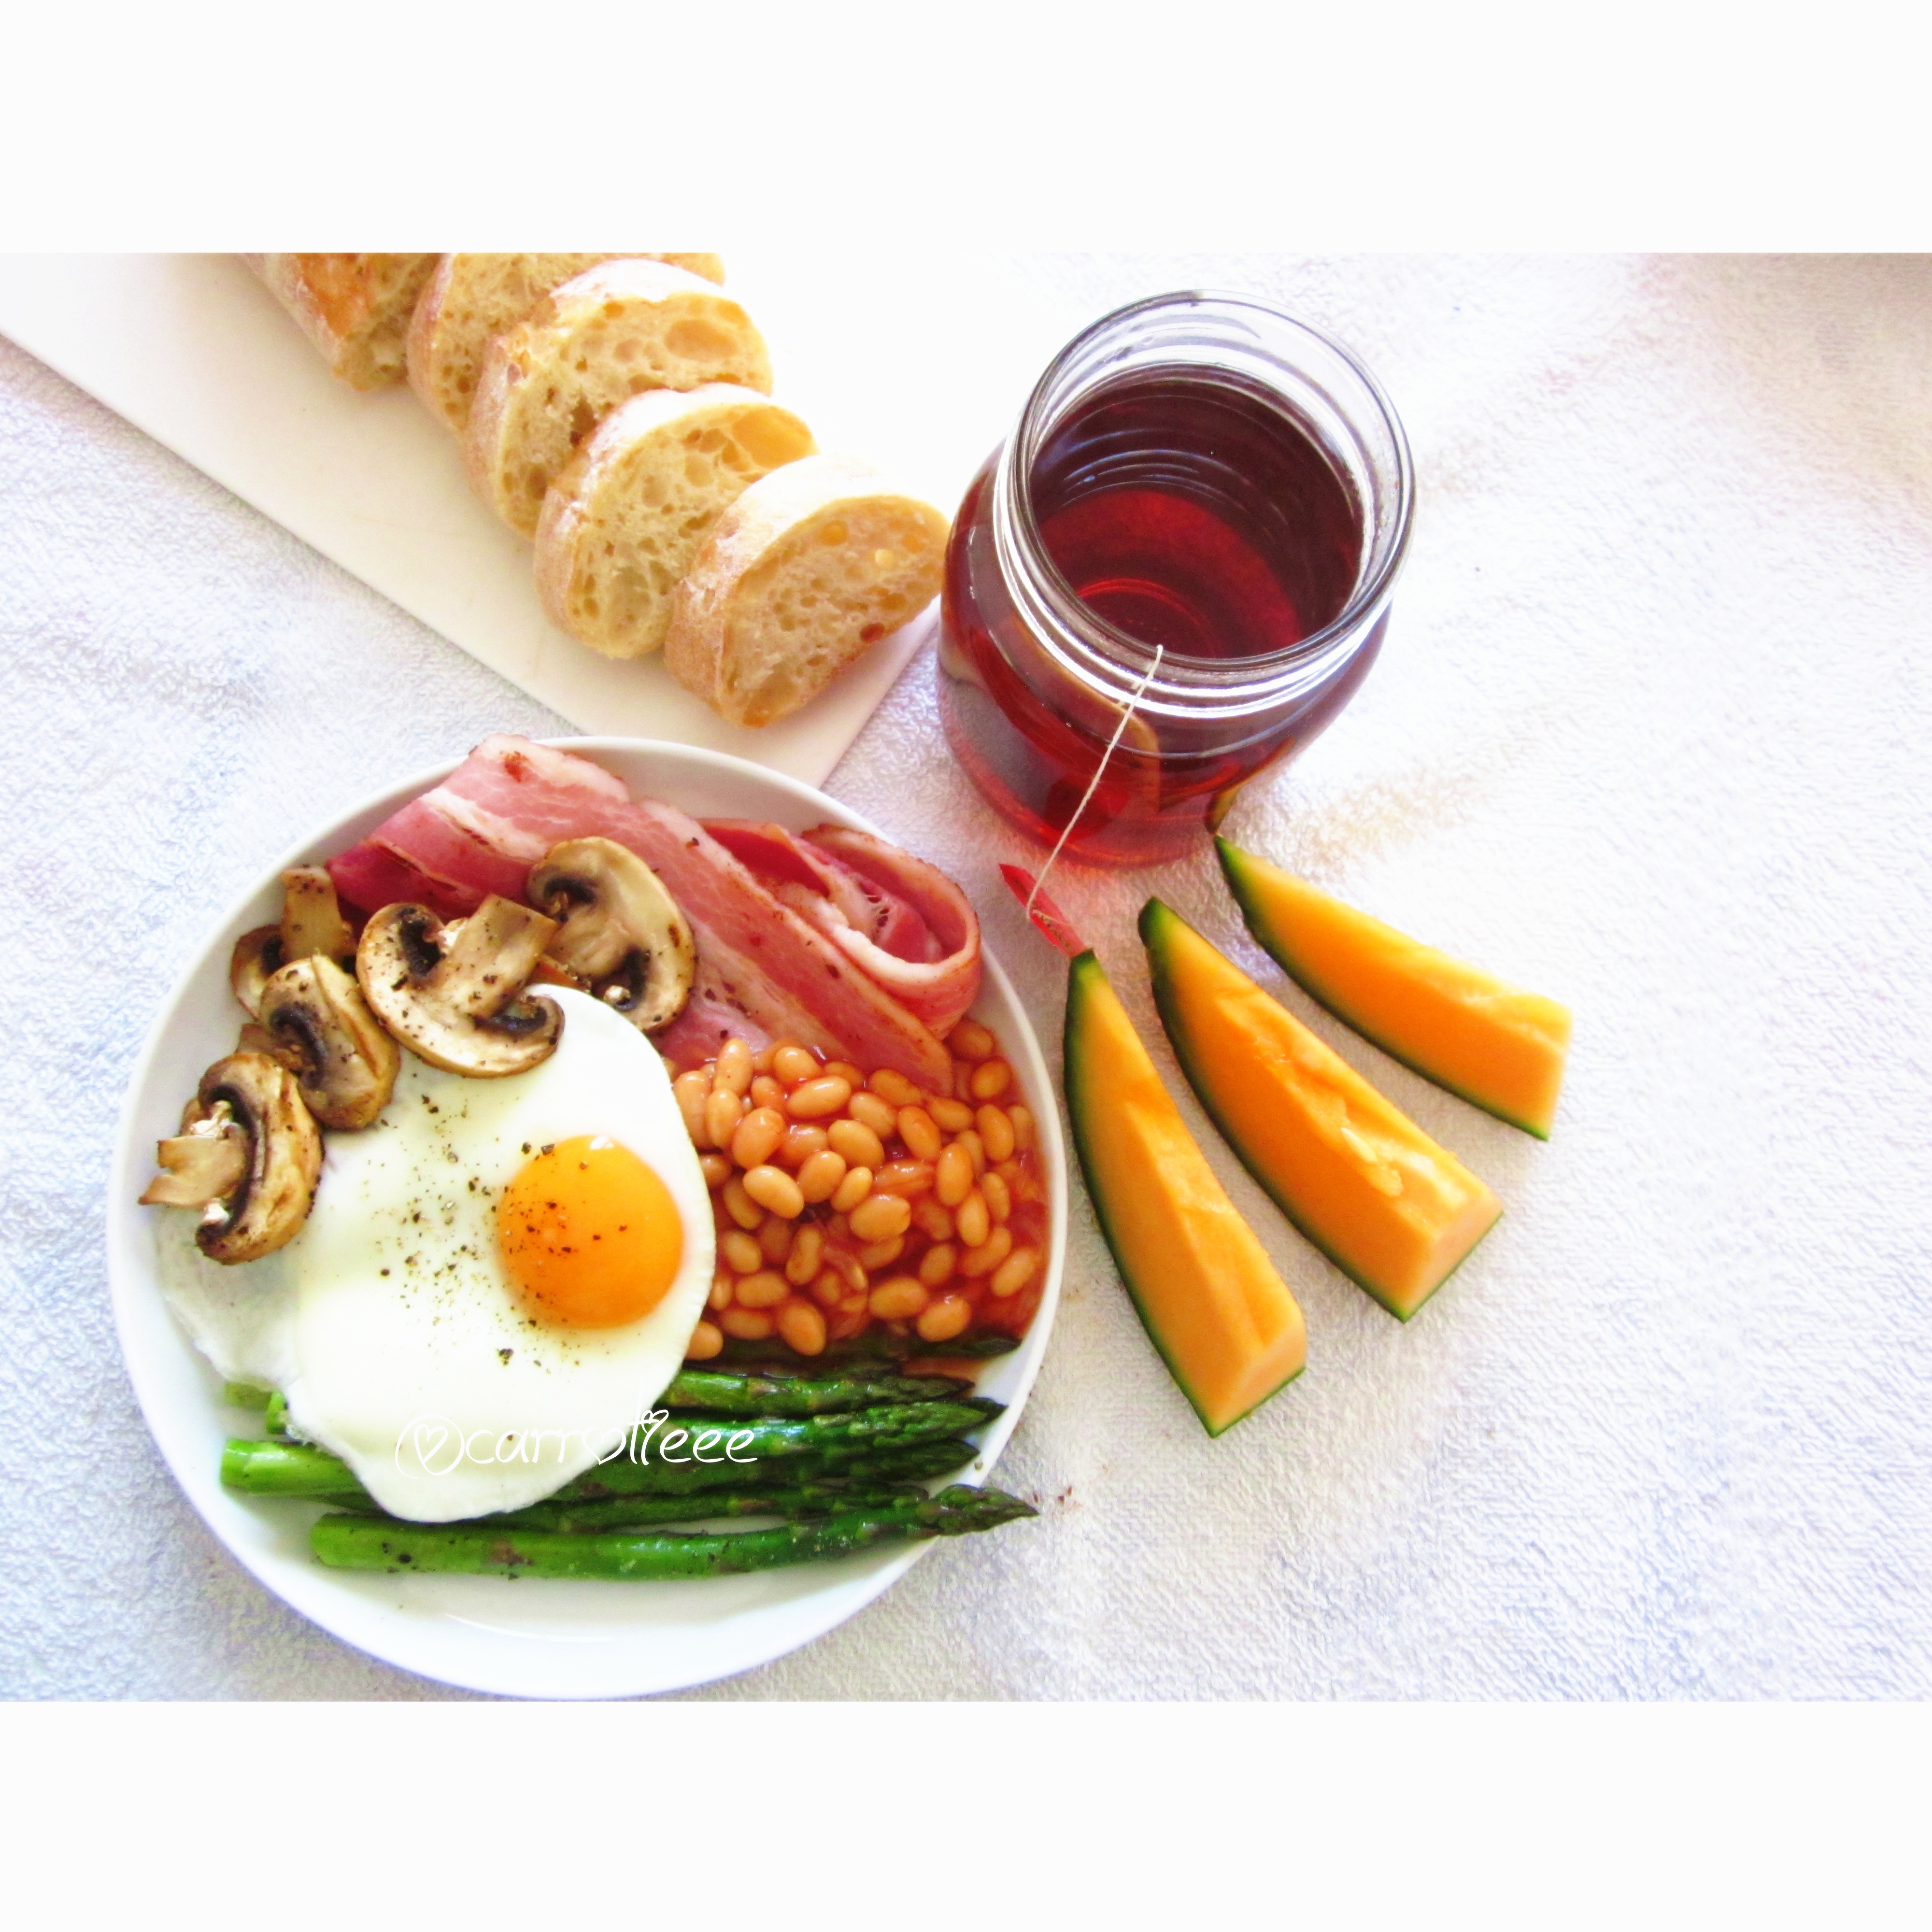 煎培根,煎蘑菇,煎芦笋,煎鸡蛋,配上茄汁黄豆和英式早餐茶,简单又丰富